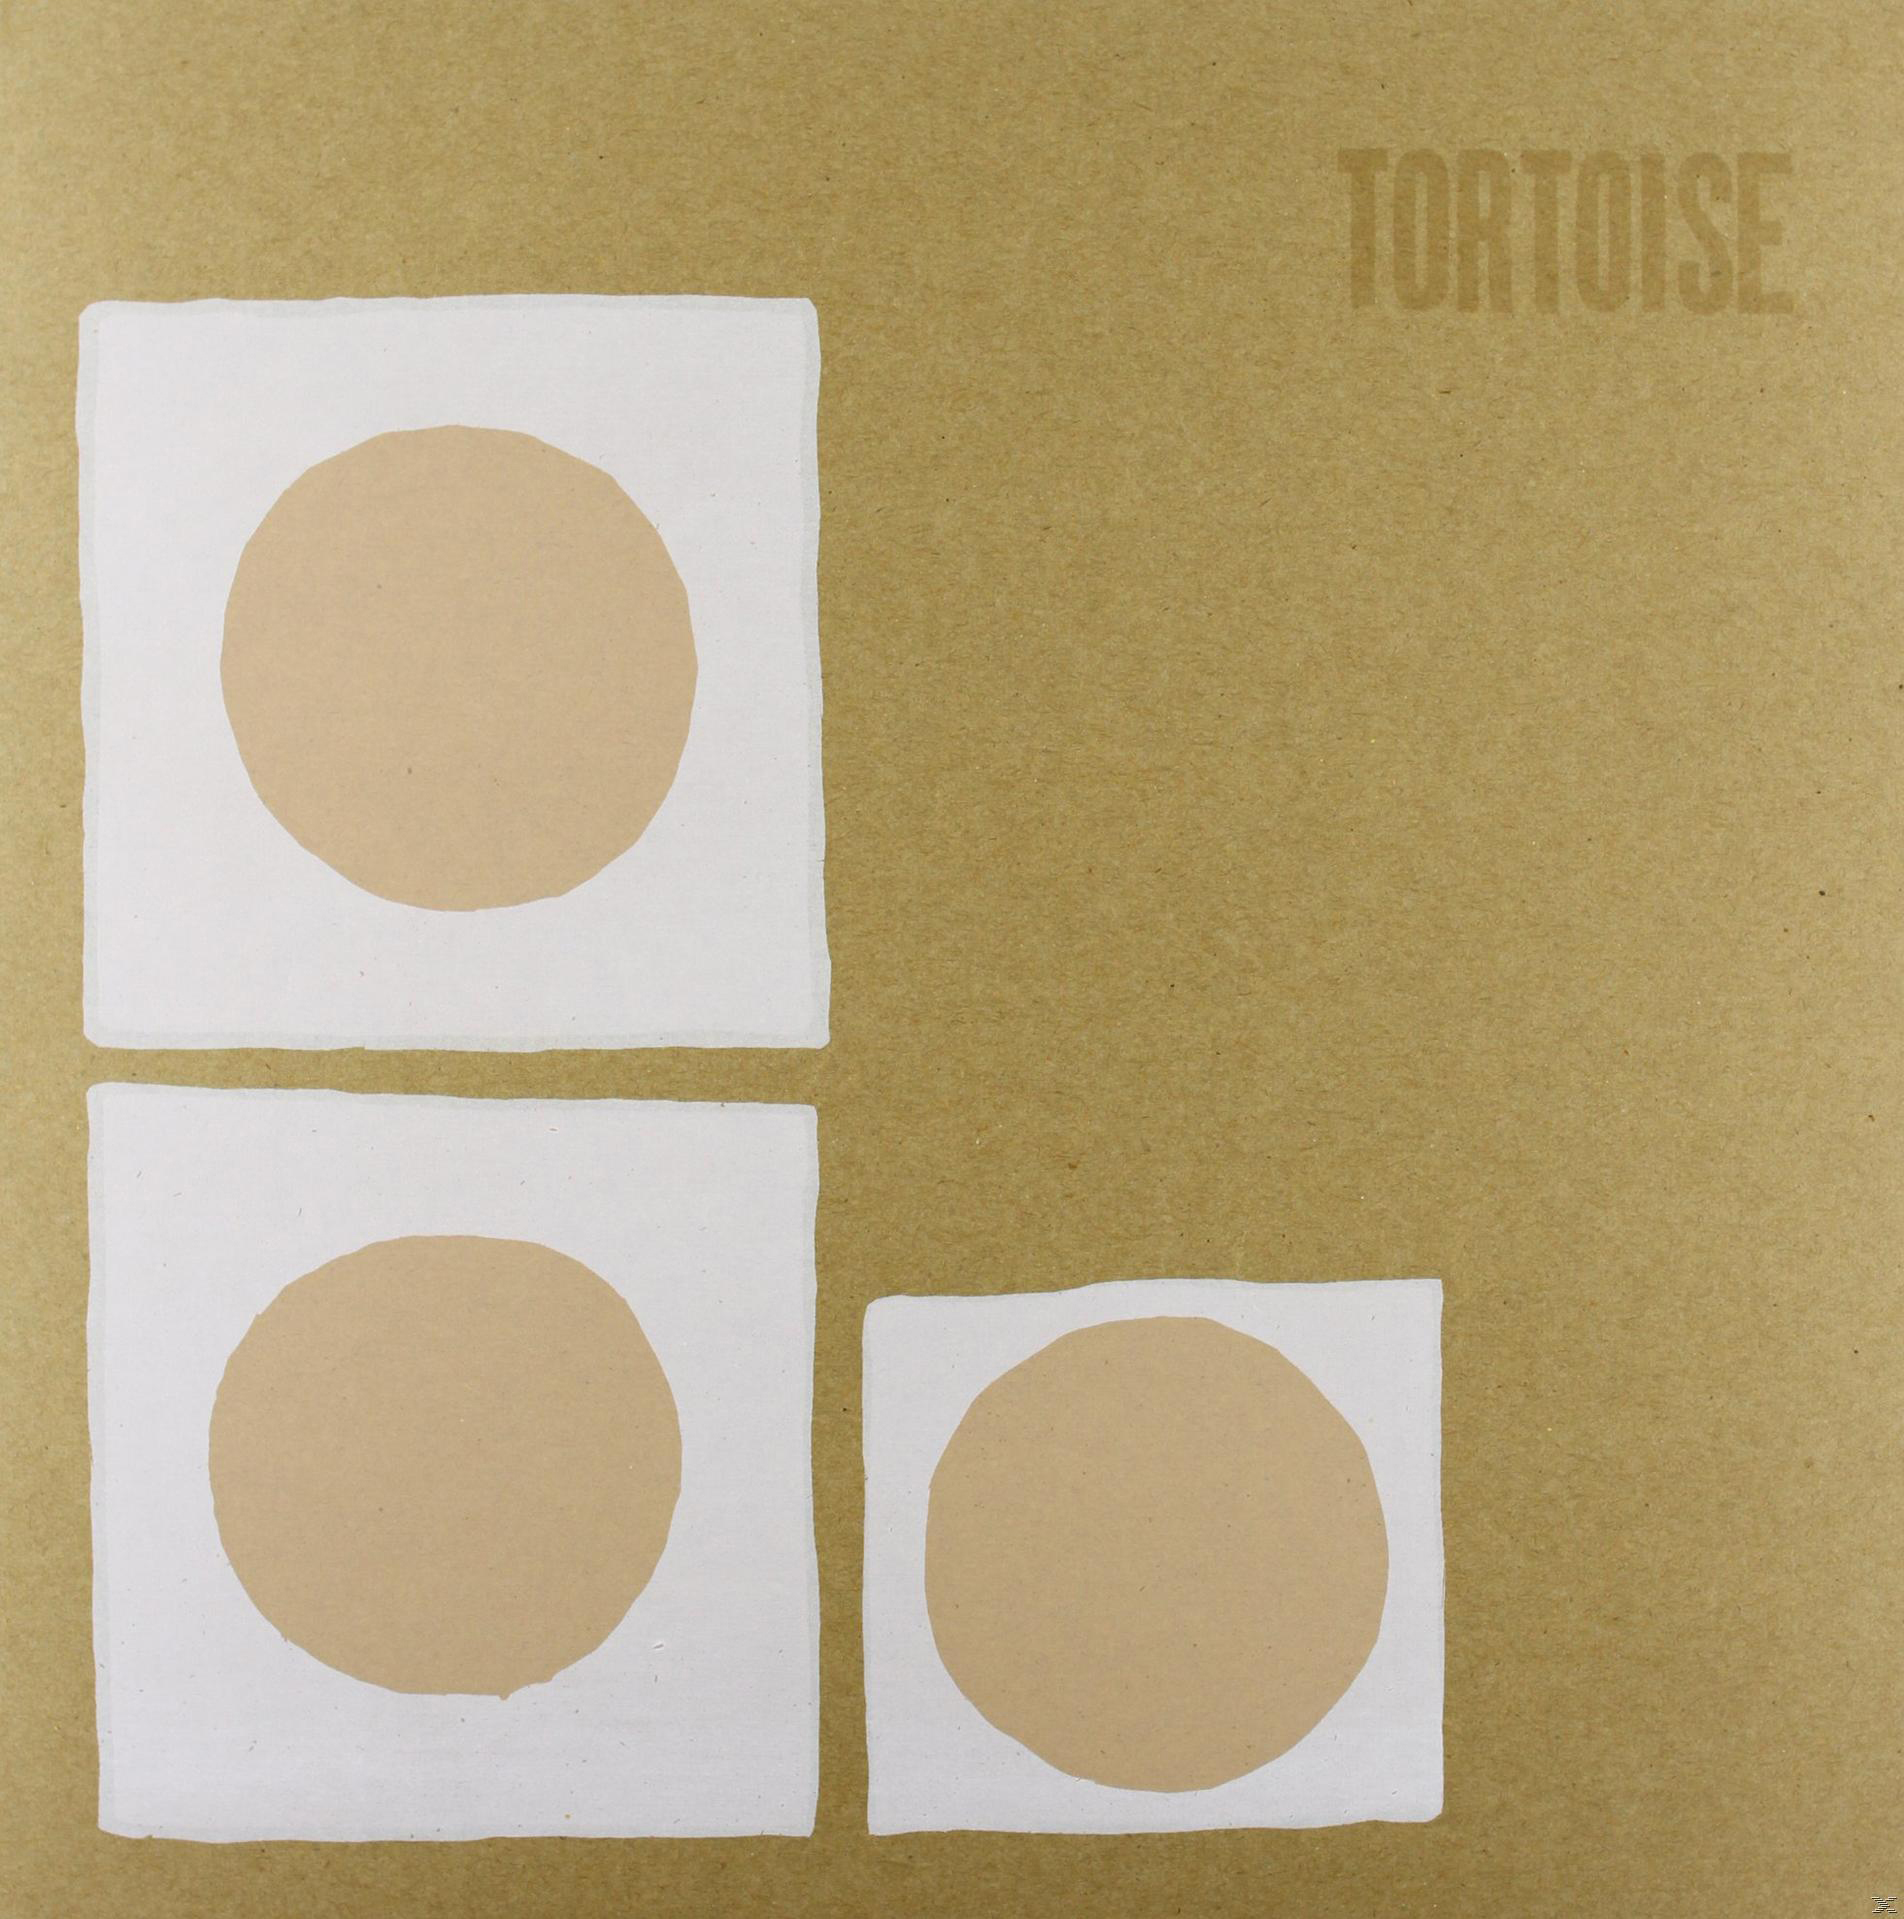 Tortoise - Tortoise - (Vinyl)